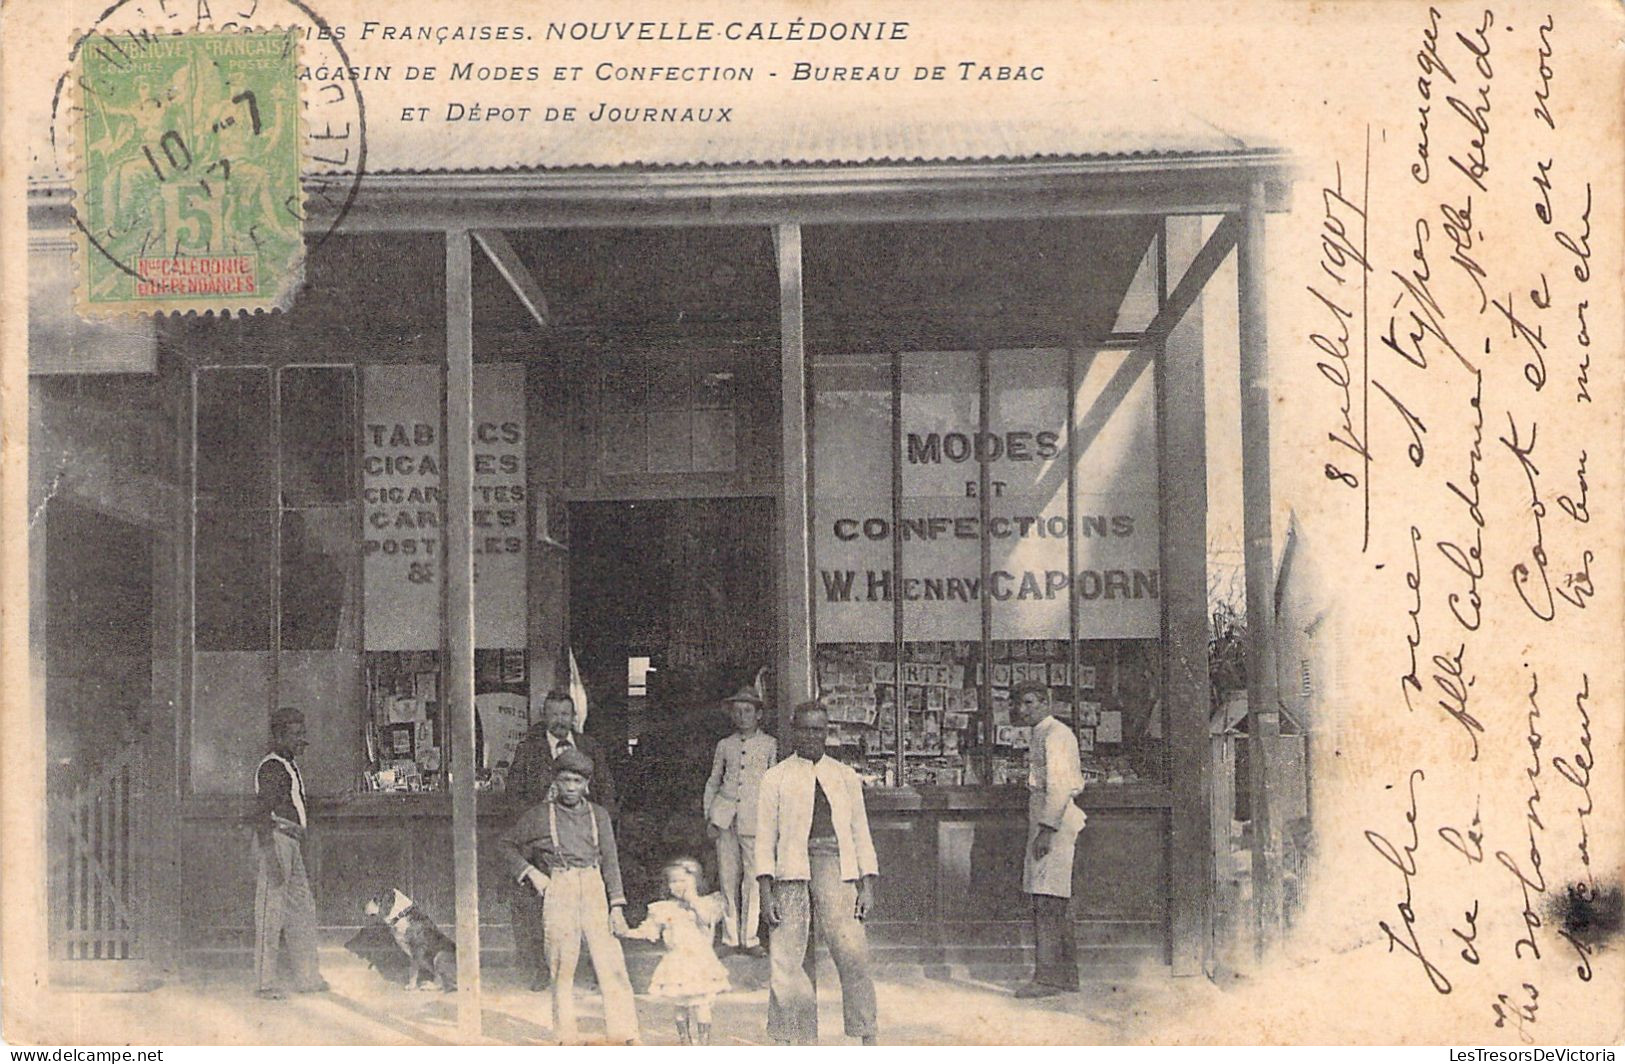 NOUVELLE CALEDONIE - NOUMEA - Magasin De Modes Et Confection - Bureau De Tabac - Carte Postale Ancienne - Nieuw-Caledonië